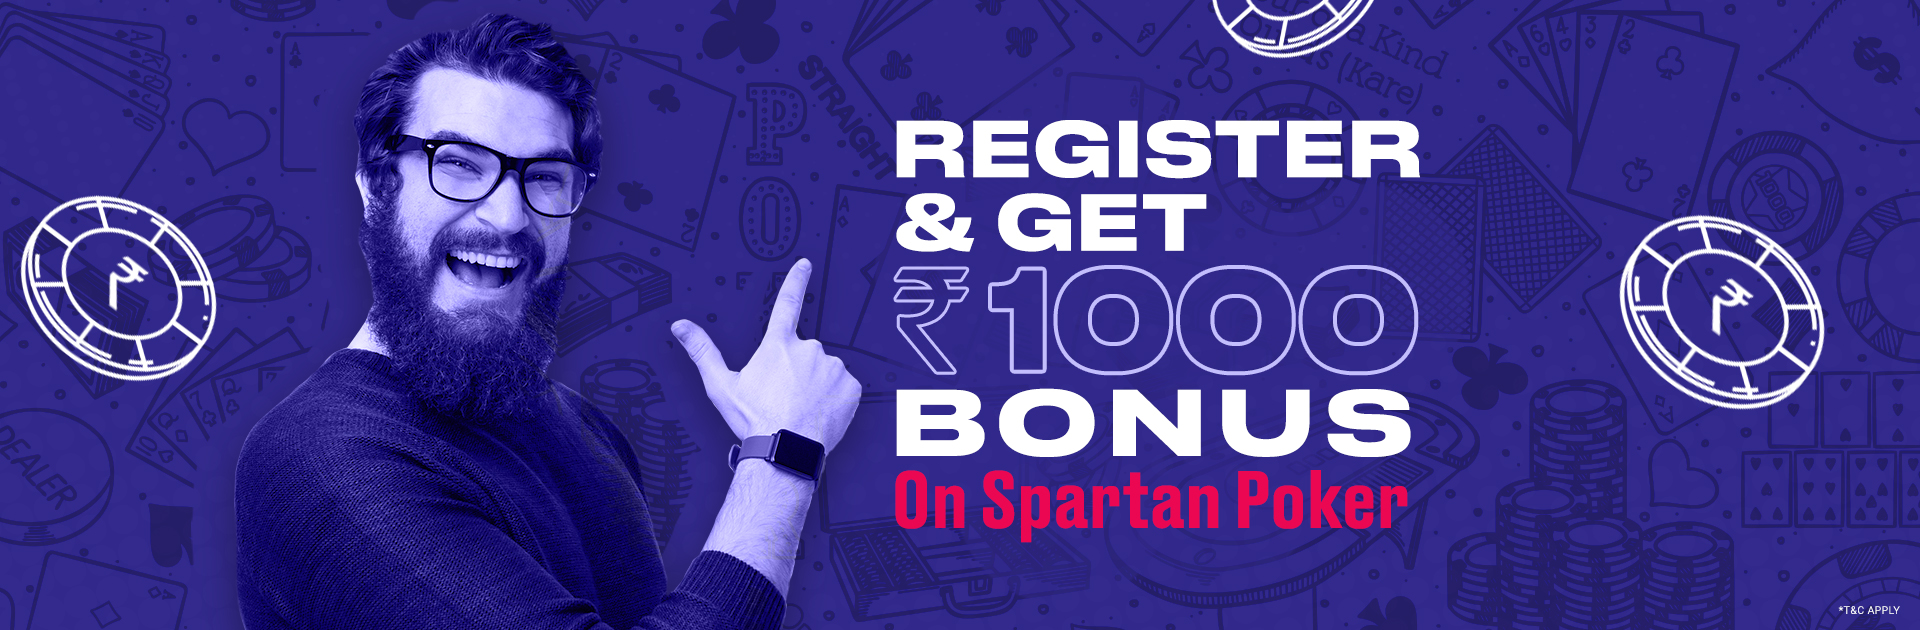 Register Now & Get 1000 Bonus